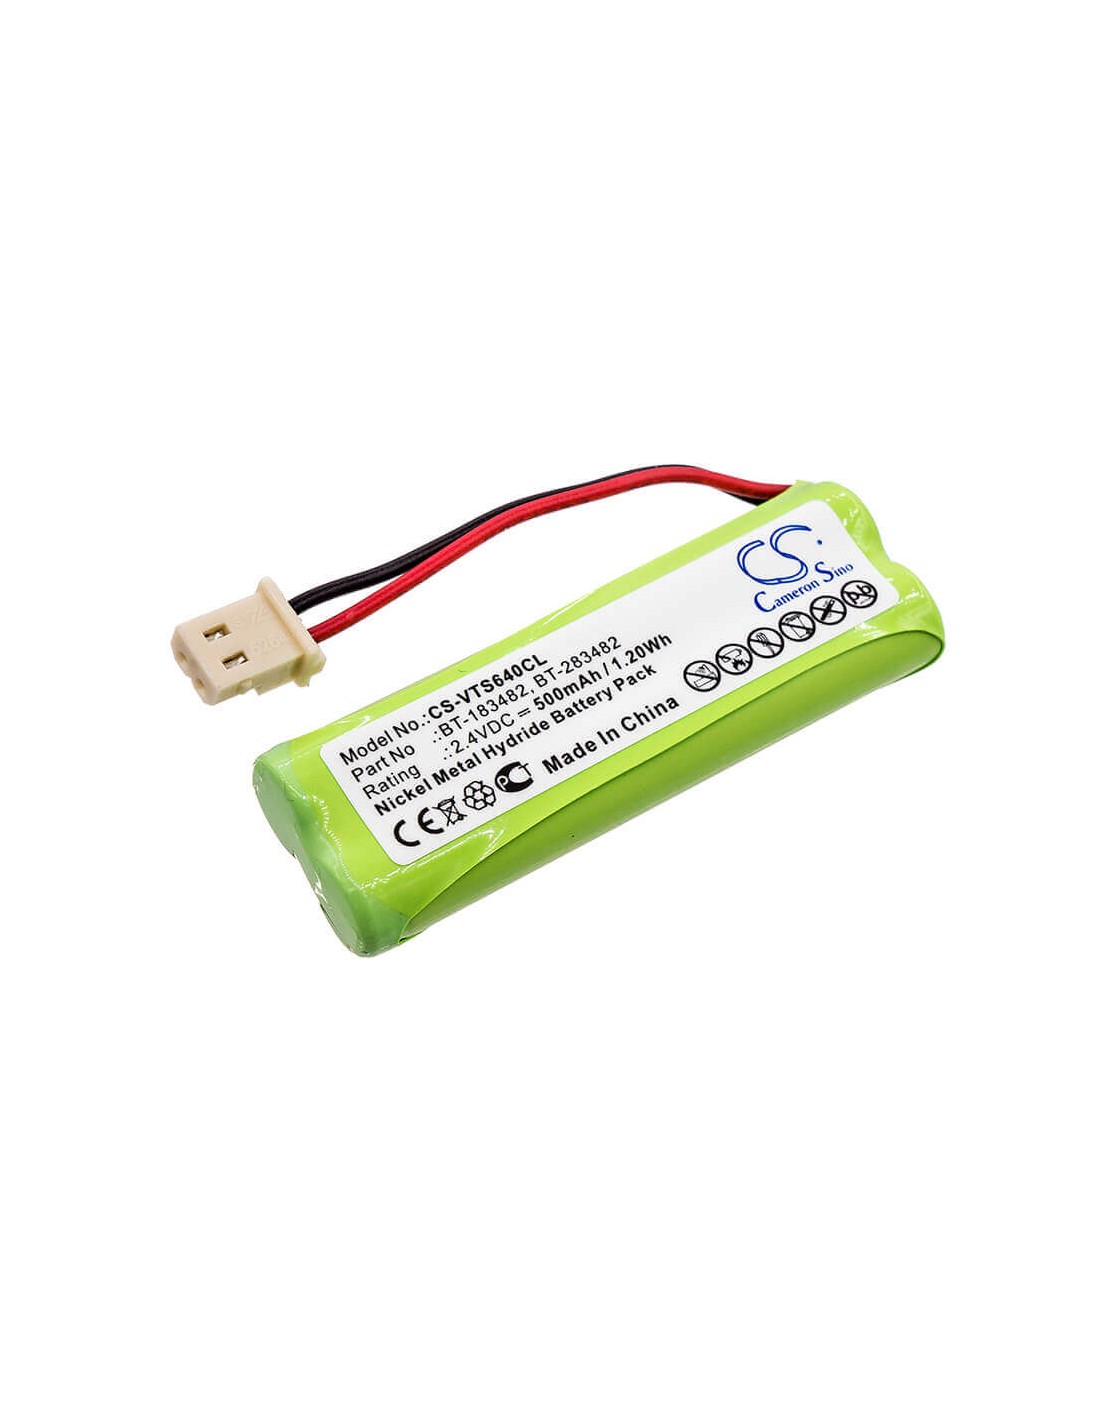 Battery for V Tech, 89134801, Cs6114 2.4V, 500mAh - 1.20Wh